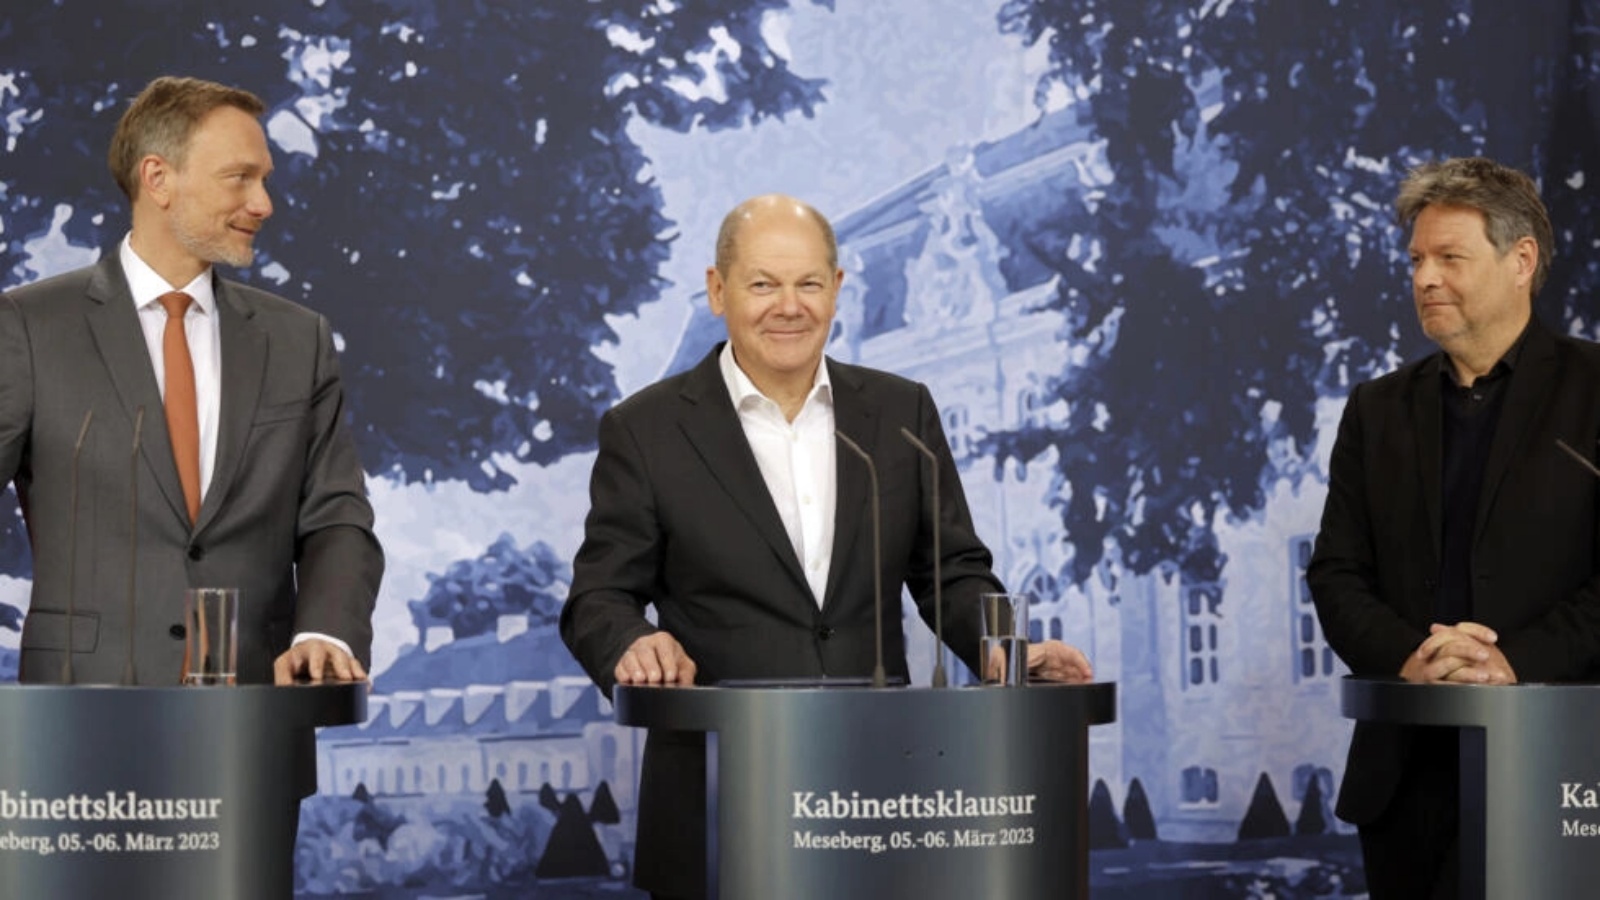 (من اليسار إلى اليمين) وزير المال الألماني كريستيان ليندنر والمستشار الألماني أولاف شولتس ووزير الاقتصاد وحماية المناخ روبرت هابيك خلال مؤتمر صحافي في ميسيبرغ بشمال شرق ألمانيا في 6 مارس 2023 